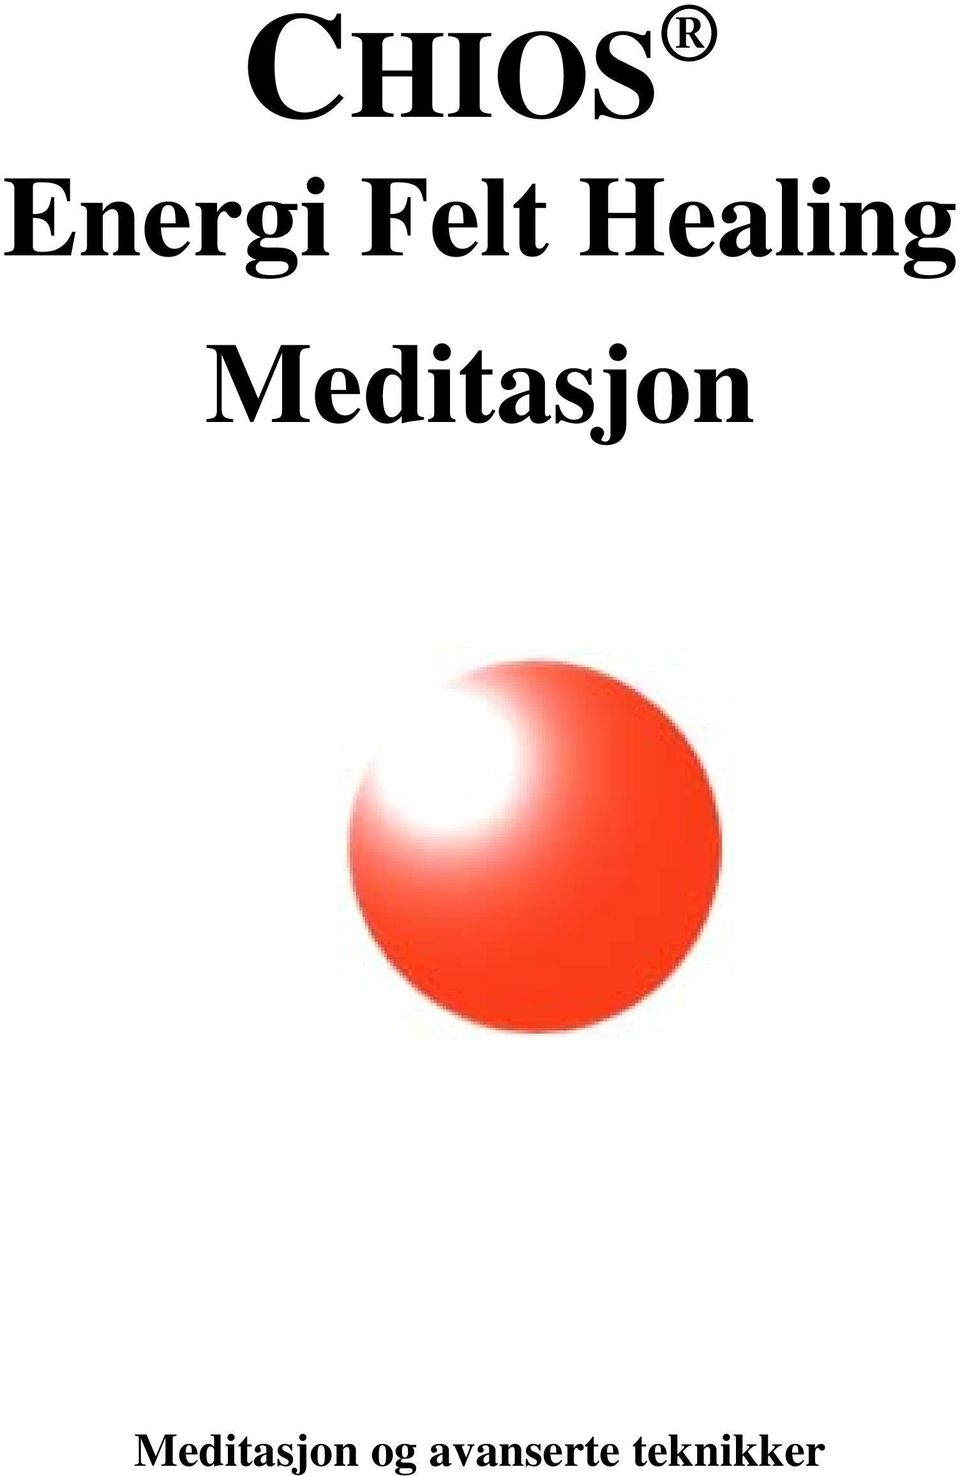 Meditasjon